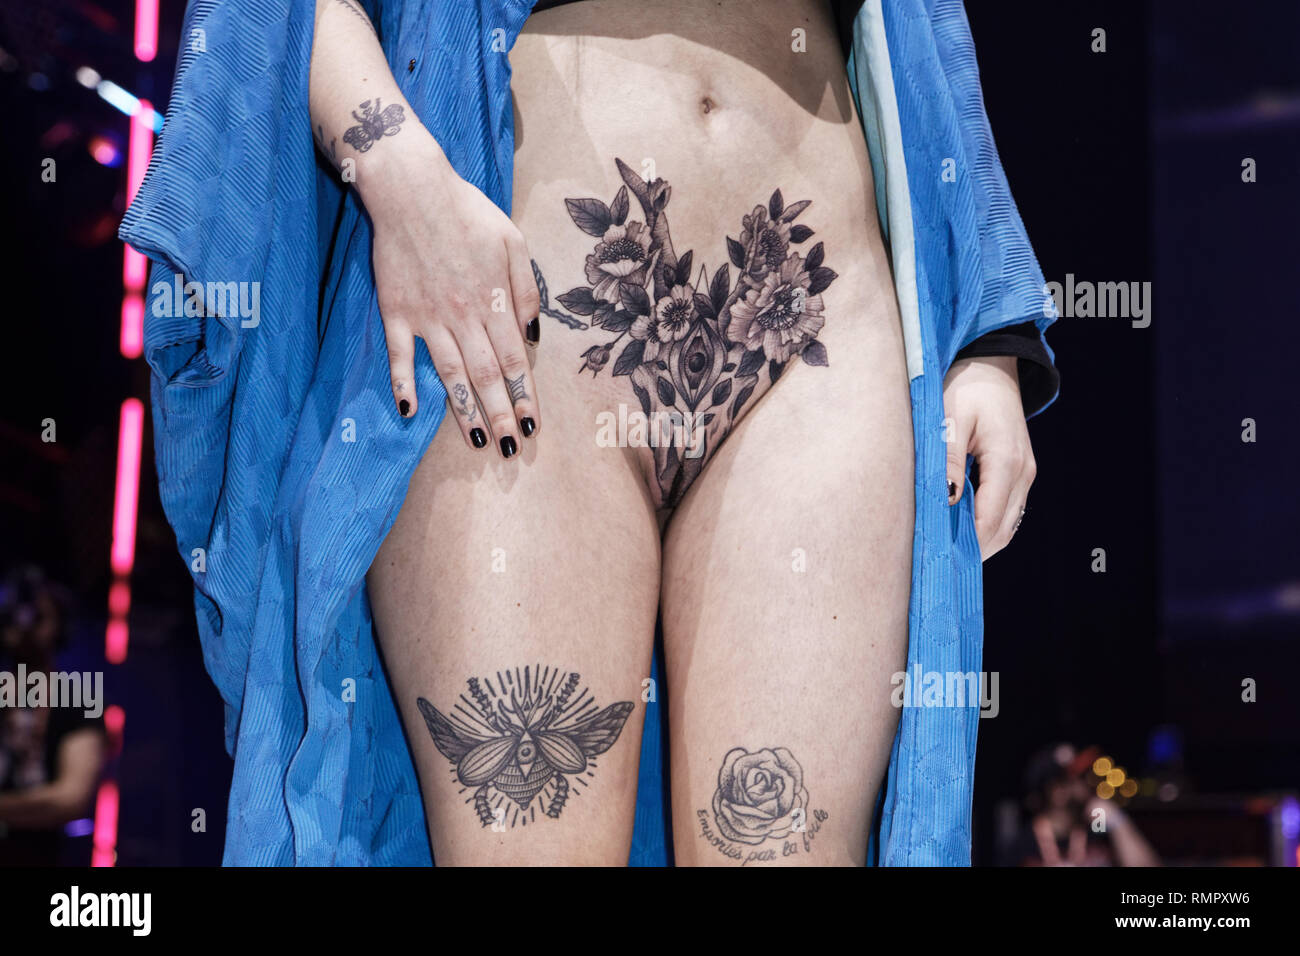 París, Francia. 15 Feb, 2019. Concurso para el mejor tatuaje del día durante la 9ª edición del Mondial du Tatouage (Mundo tatuaje) el 15 de febrero de 2019 en la Grande Halle de la Villette, en París, Francia. Crédito: Bernard Menigault/Alamy Live News Foto de stock